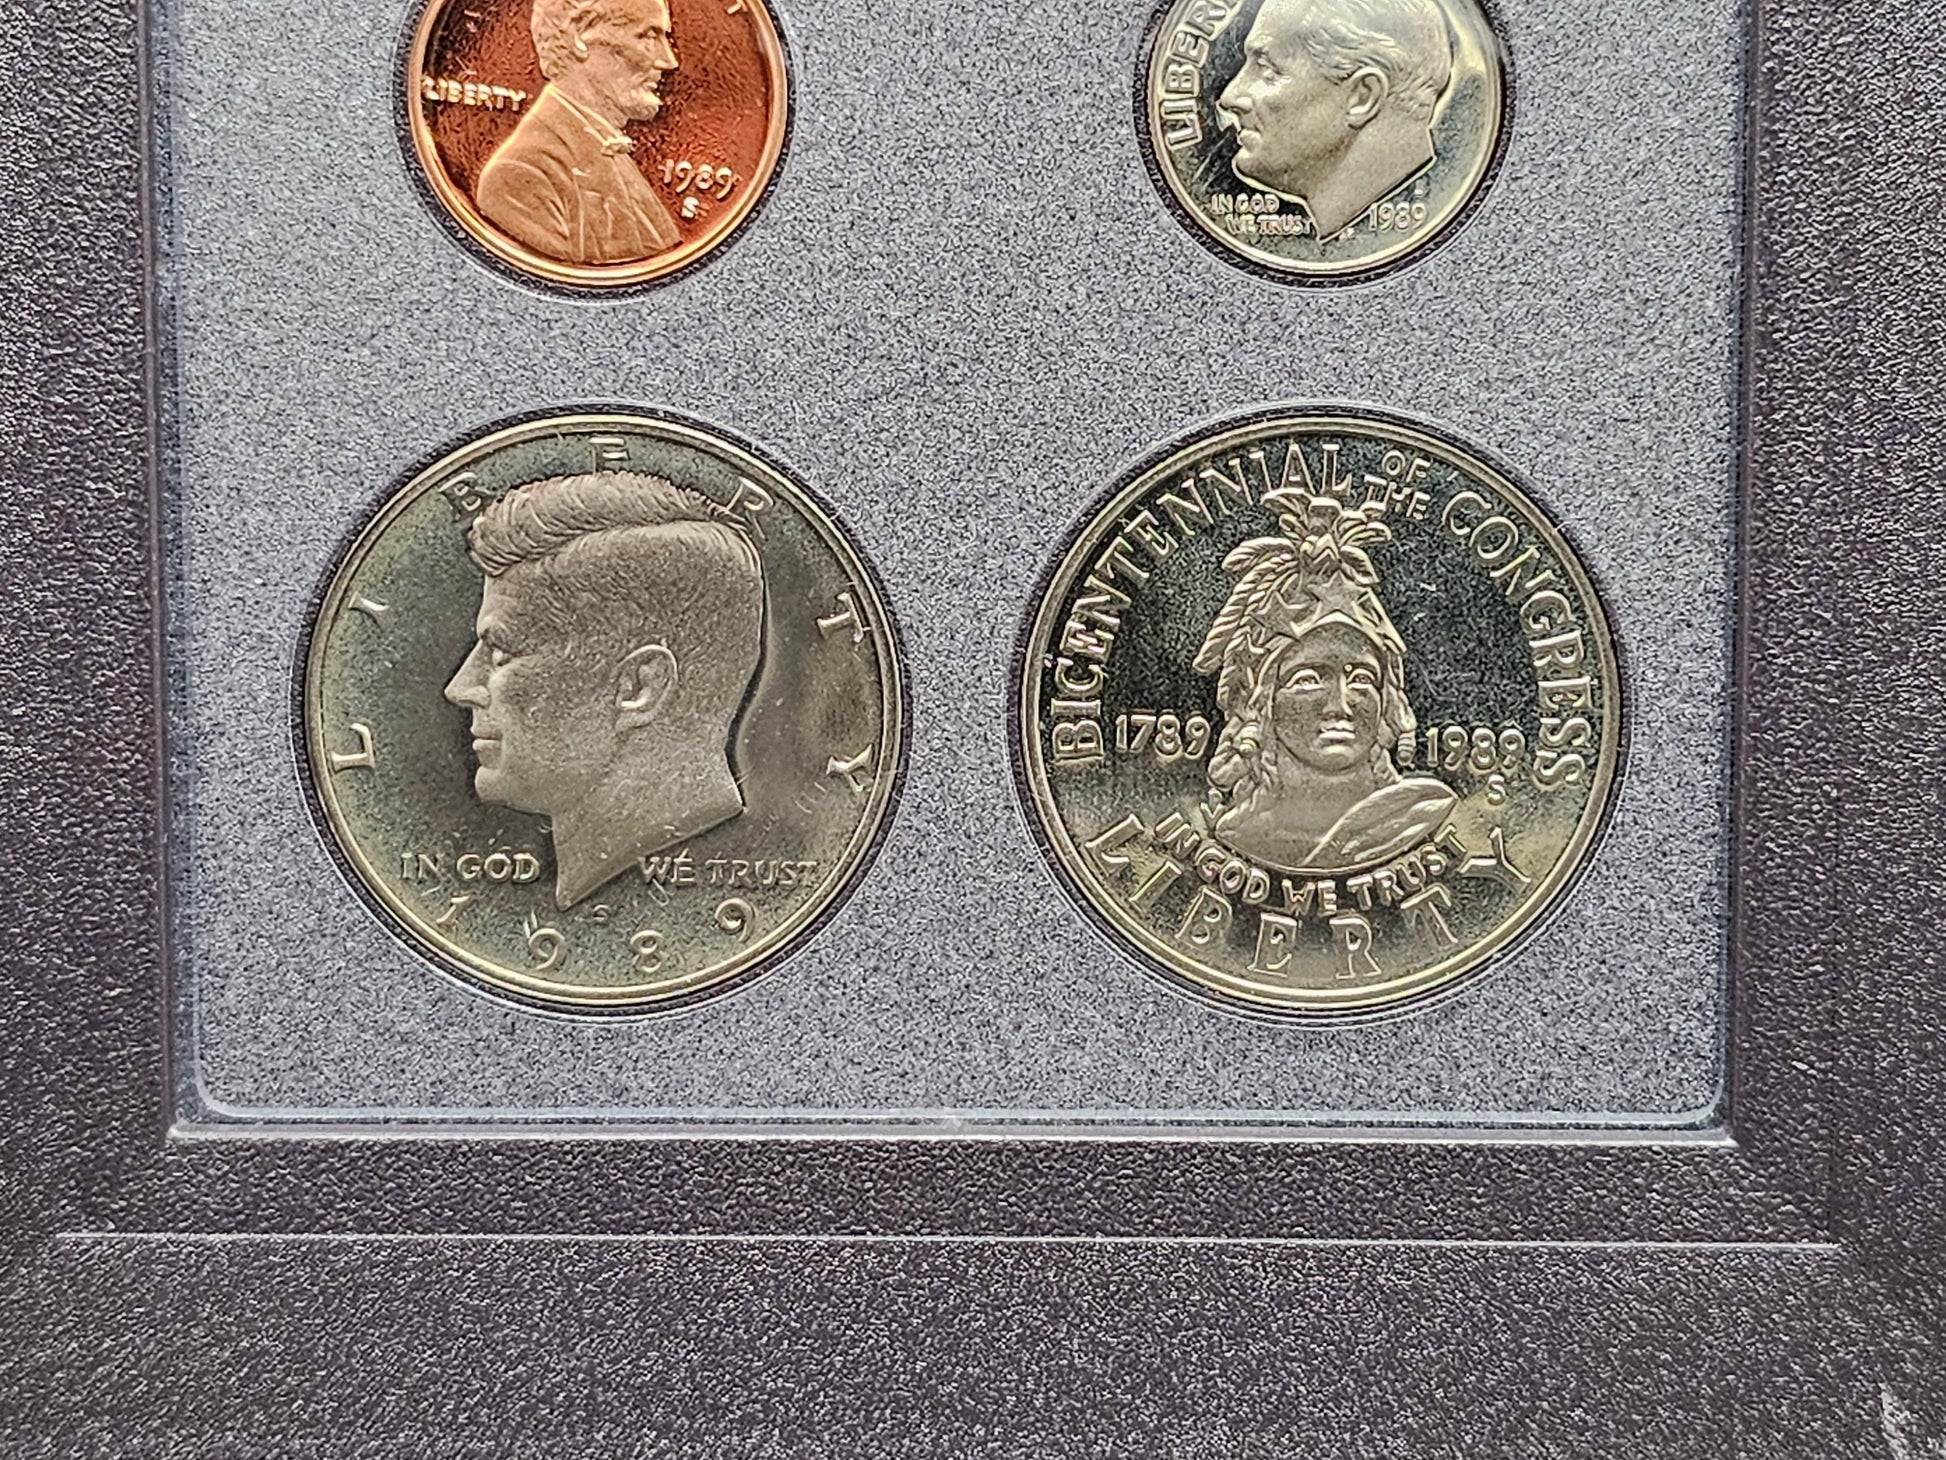 1989 United States Prestige Proof Set - Loose Change Coins